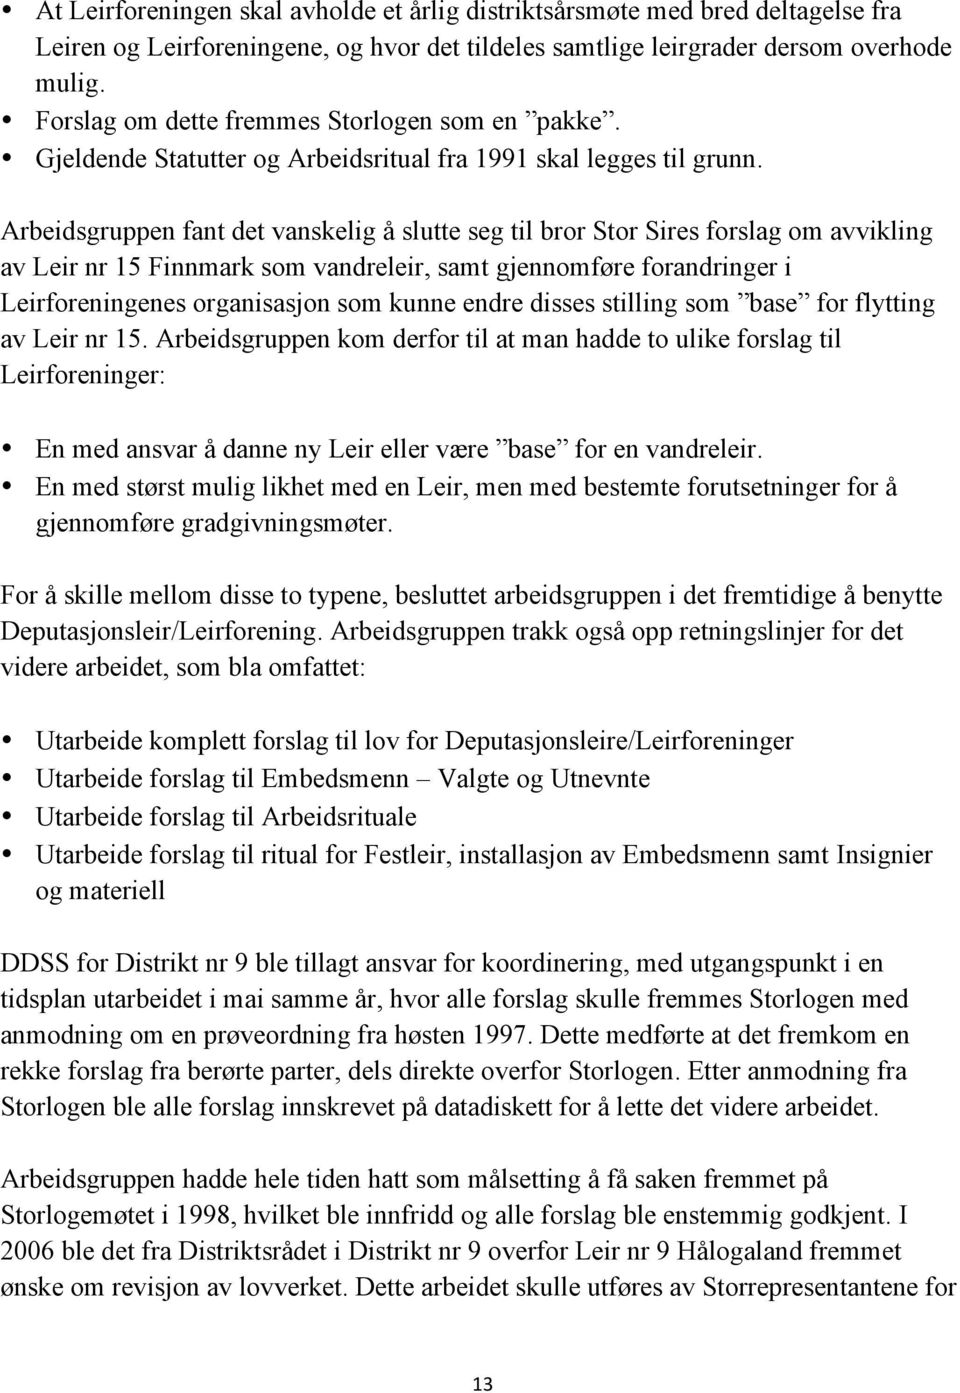 Arbeidsgruppen fant det vanskelig å slutte seg til bror Stor Sires forslag om avvikling av Leir nr 15 Finnmark som vandreleir, samt gjennomføre forandringer i Leirforeningenes organisasjon som kunne